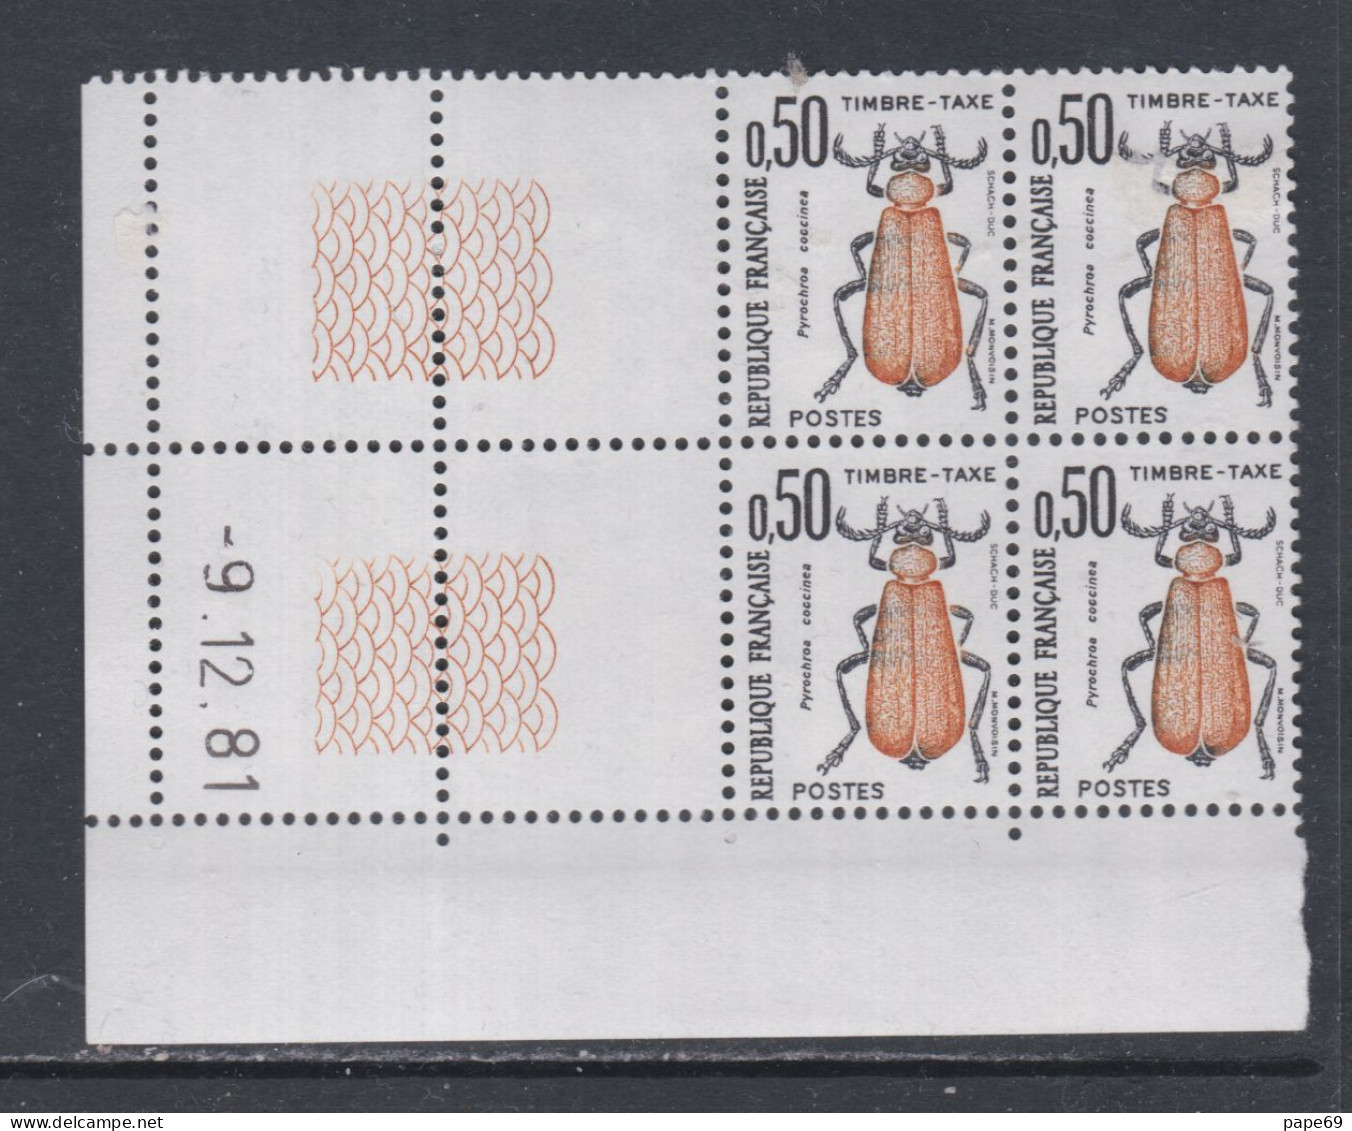 France Timbres-Taxe N° 105 XX Insectes : 50 C. Coléoptère, En Bloc De 4 Coin Daté Du 9 . 12 . 81 ; Sans Trait, Ss Ch. TB - Taxe